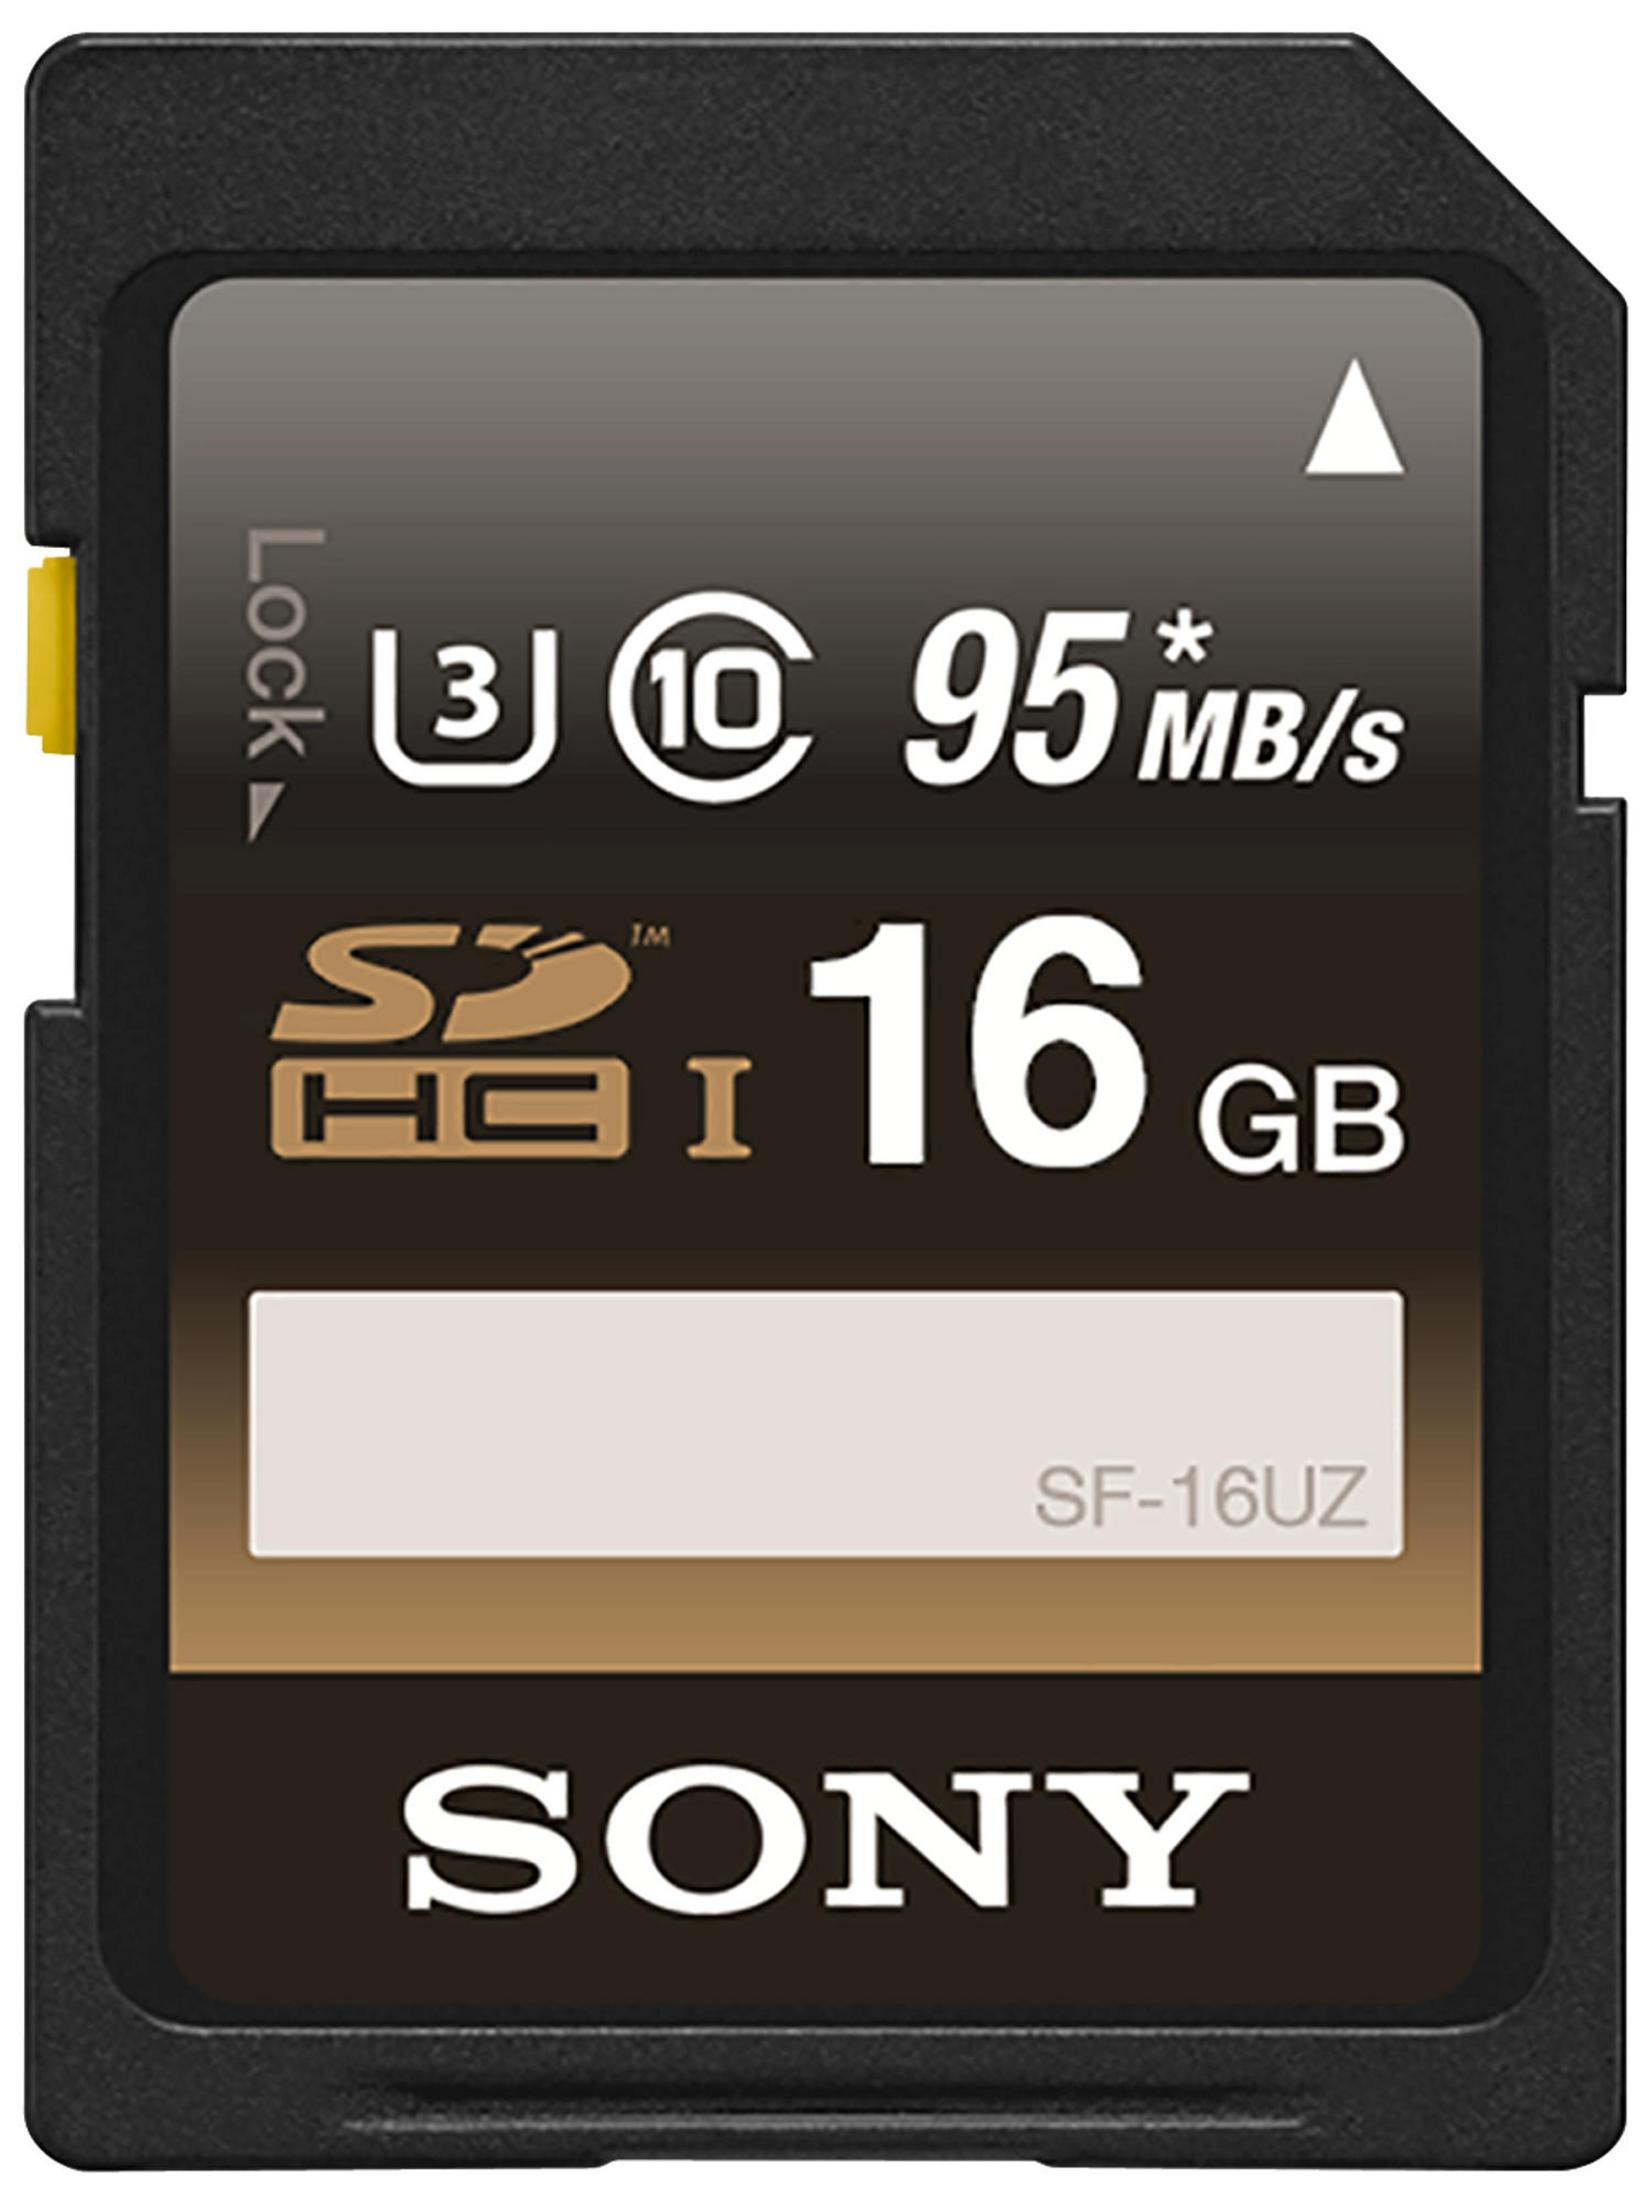 SONY SF 16 UZ, Speicherkarte, 16 SD GB, Mbit/s 95